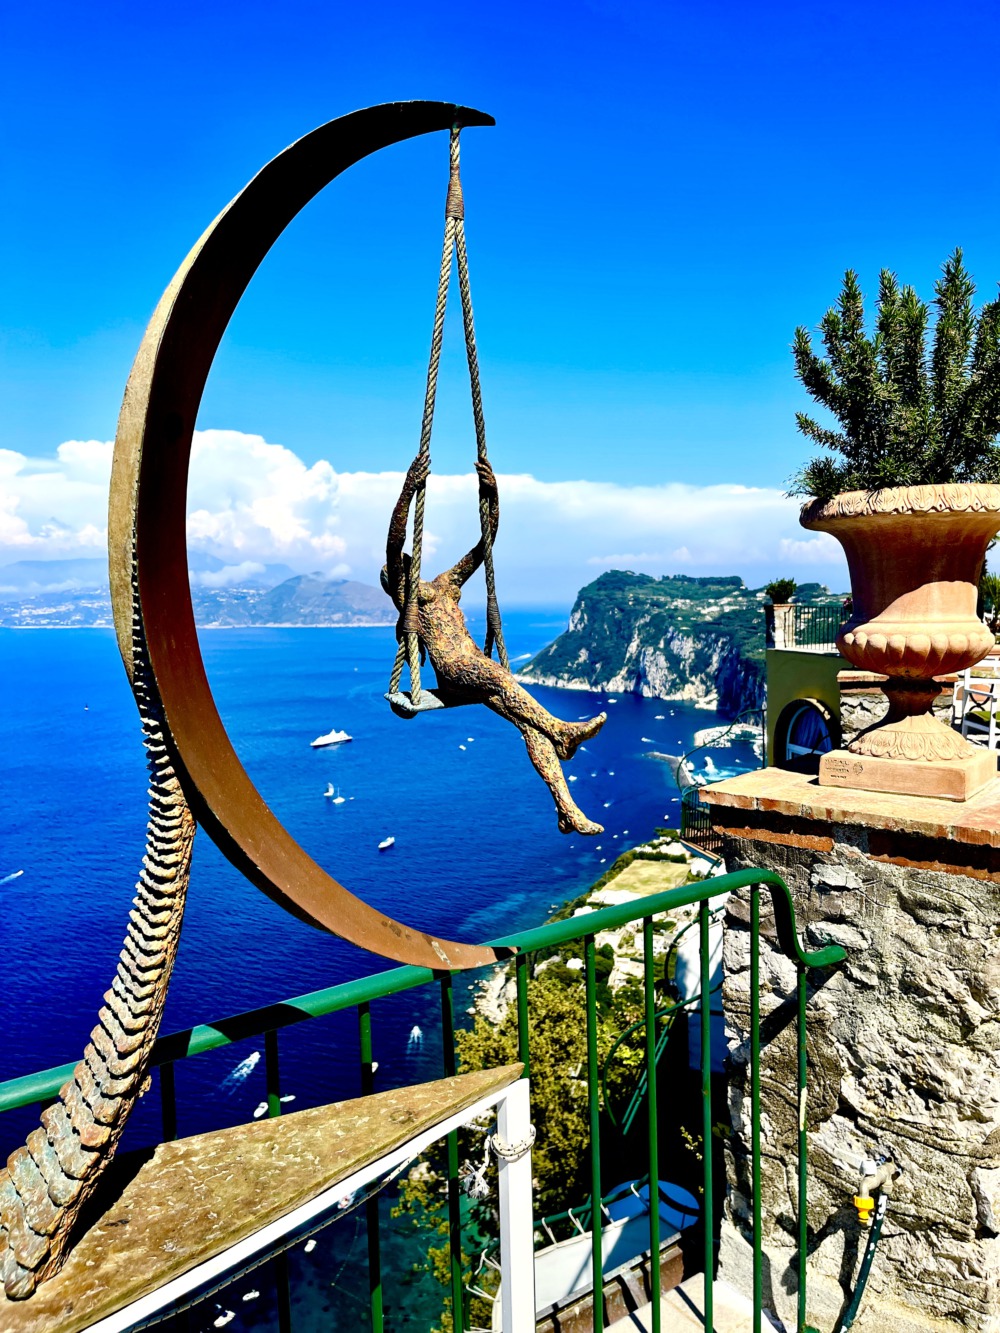 Ein ganz besonderer Reisebericht über Capri von Bibi Horst